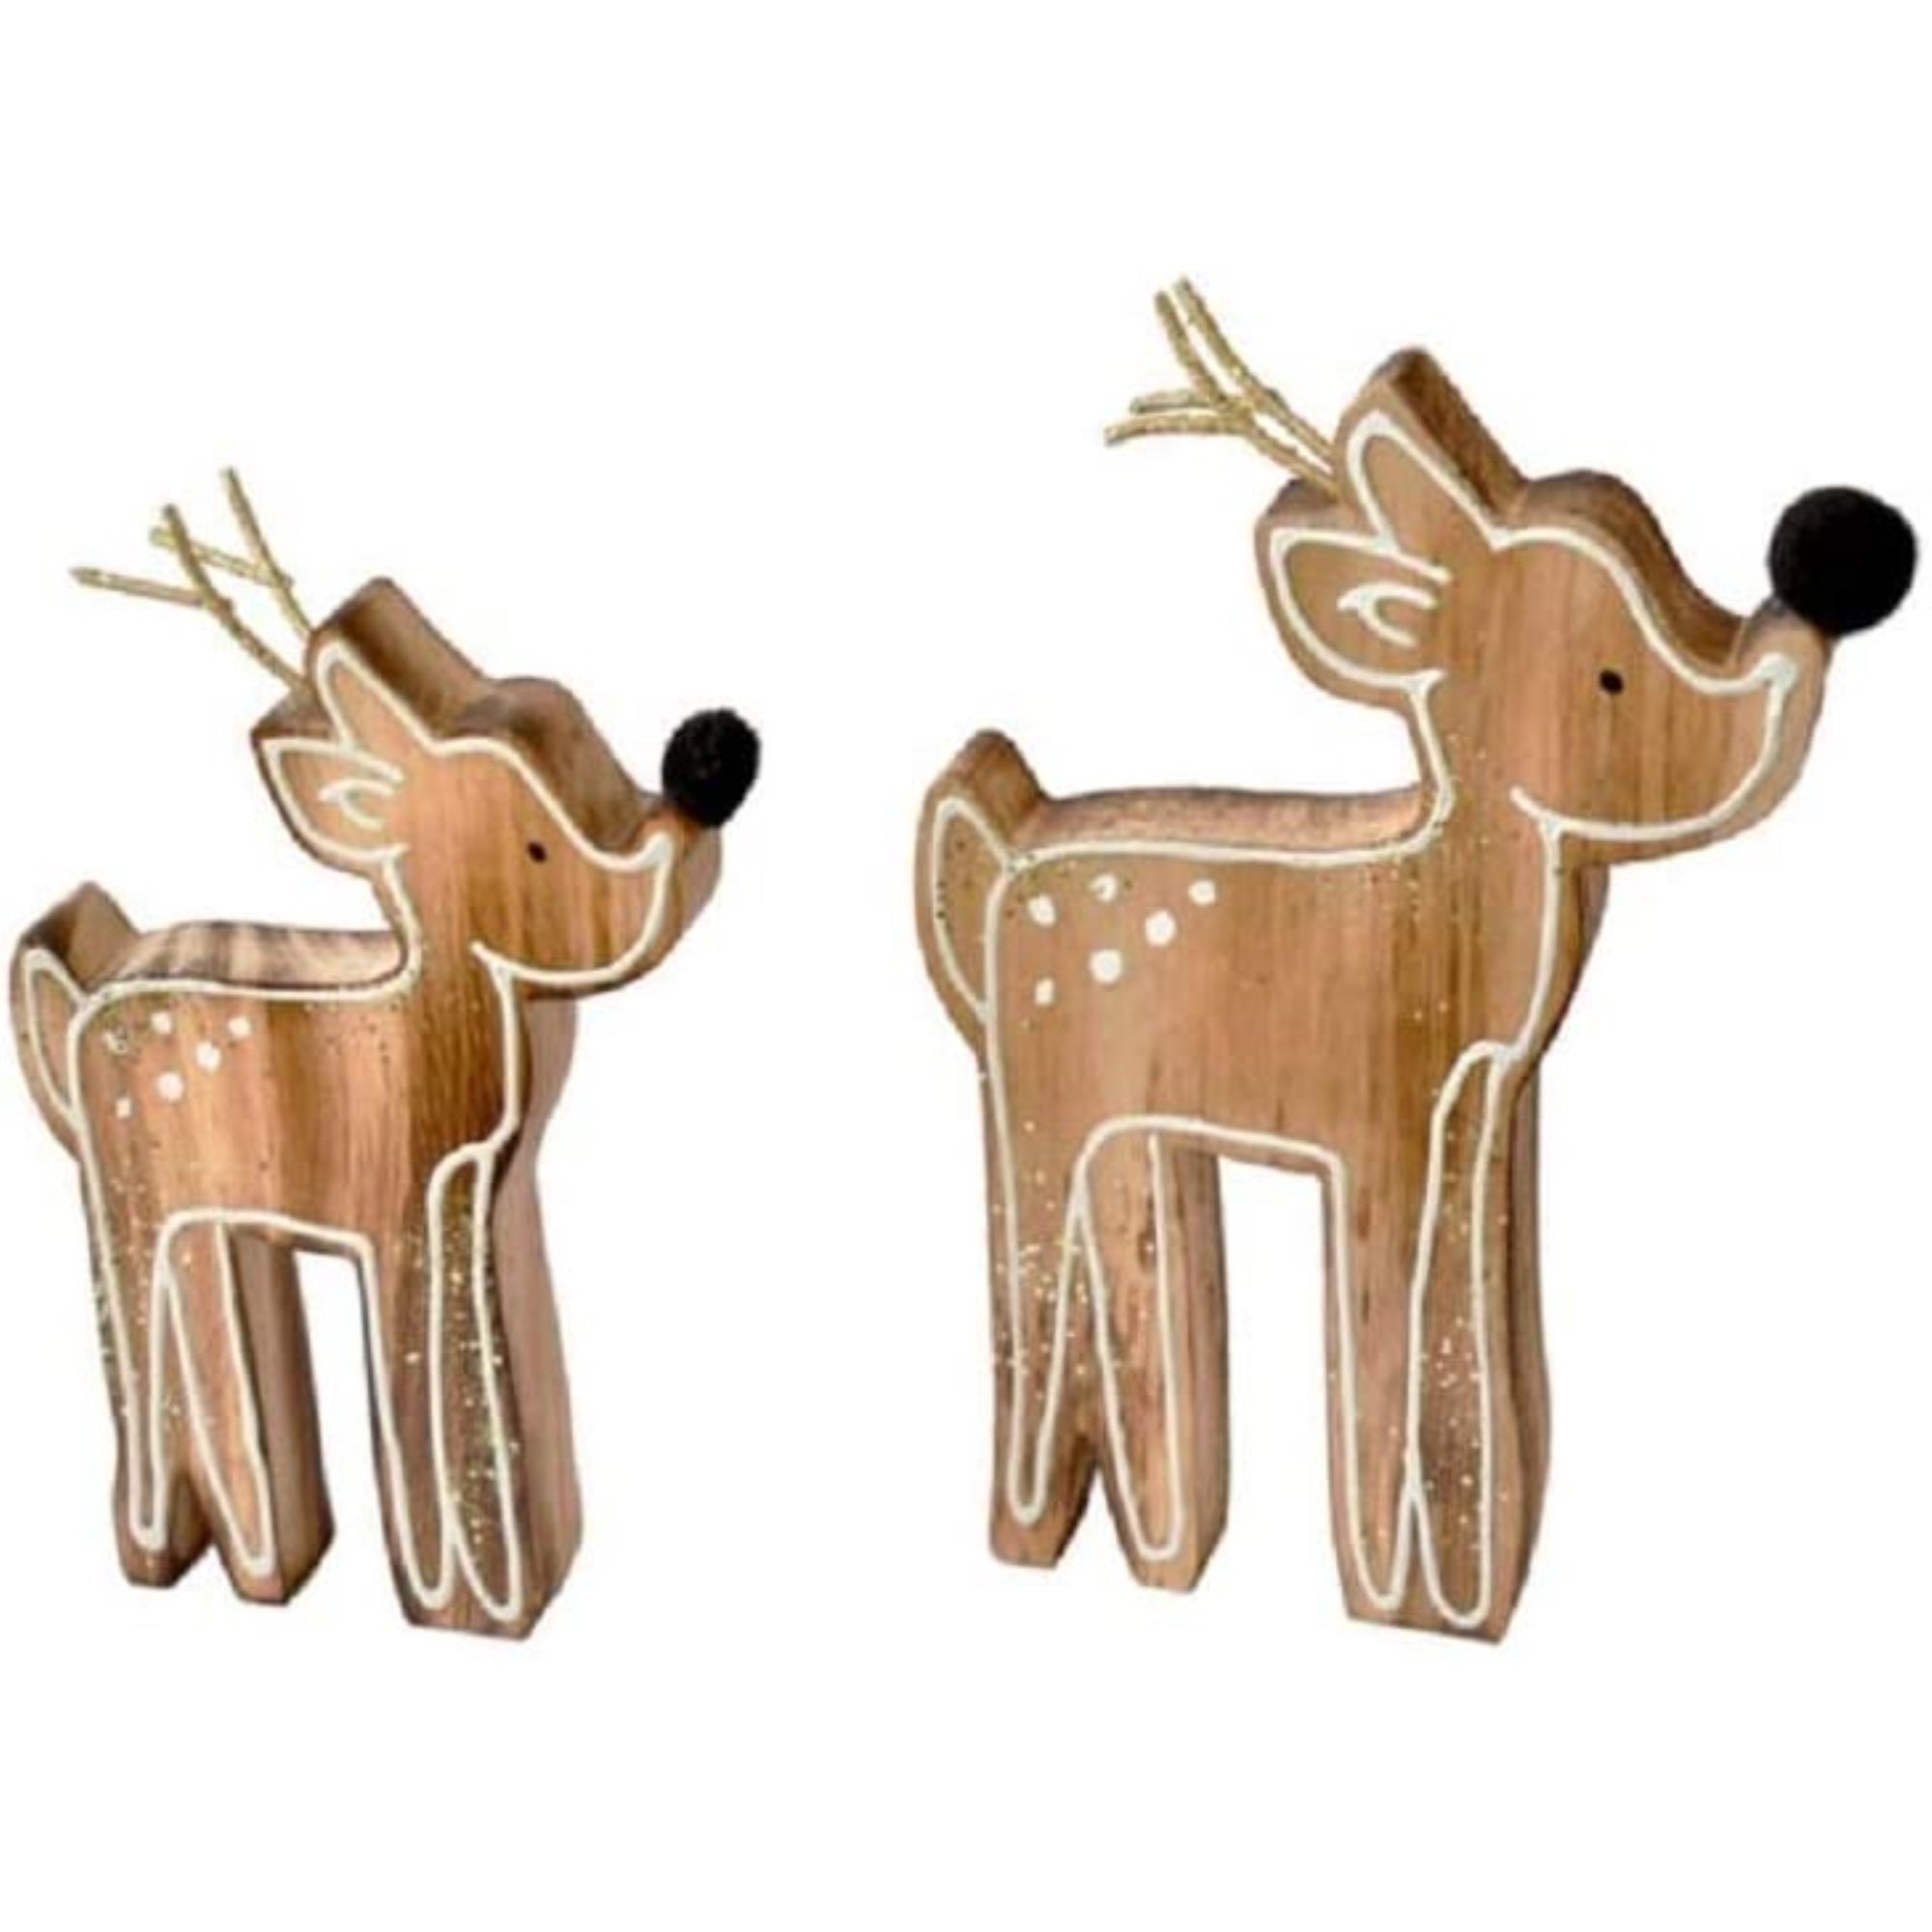 Ganz Wooden Tabletop Reindeer Figurines, 2 Piece Set